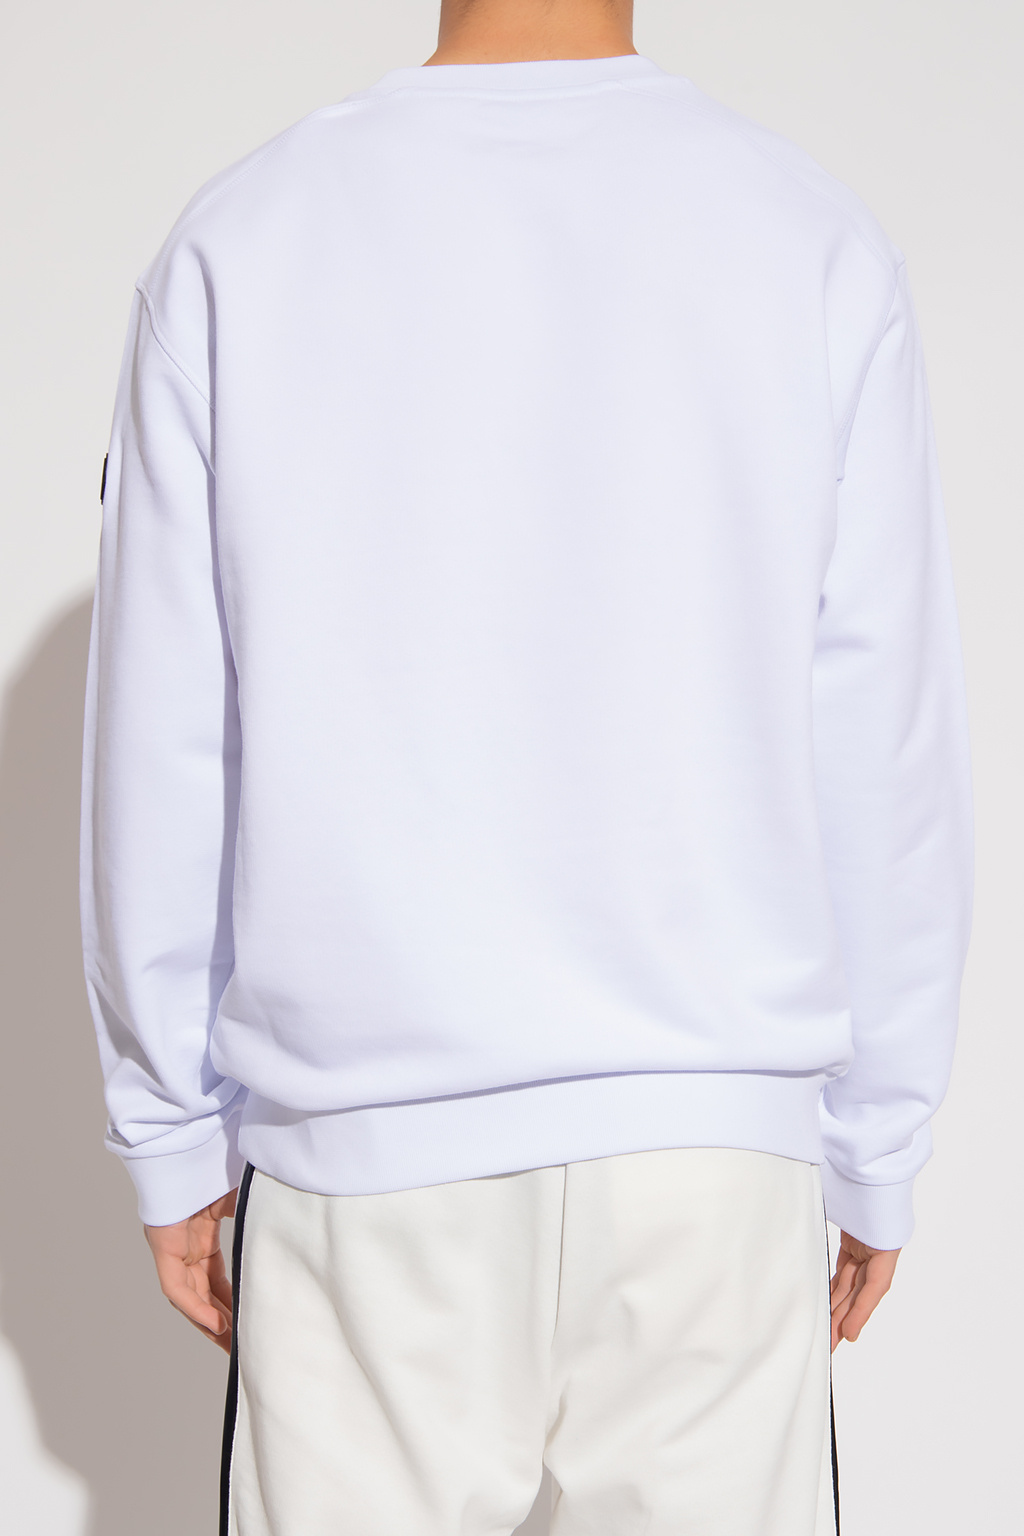 Moncler blanc sweatshirt with logo